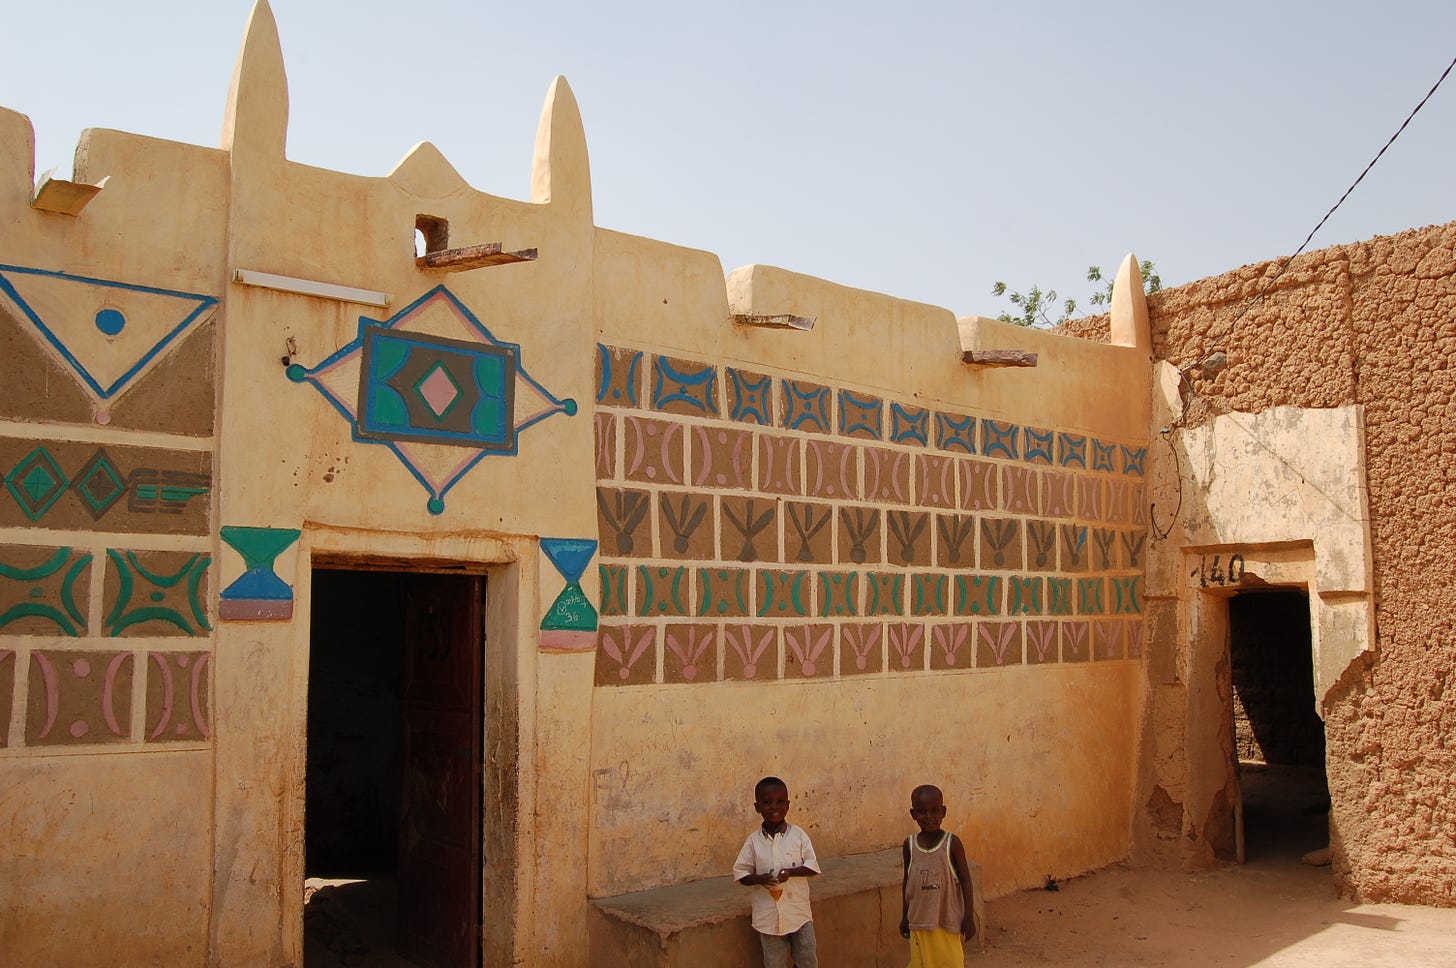 Hausa architecture - Wikipedia